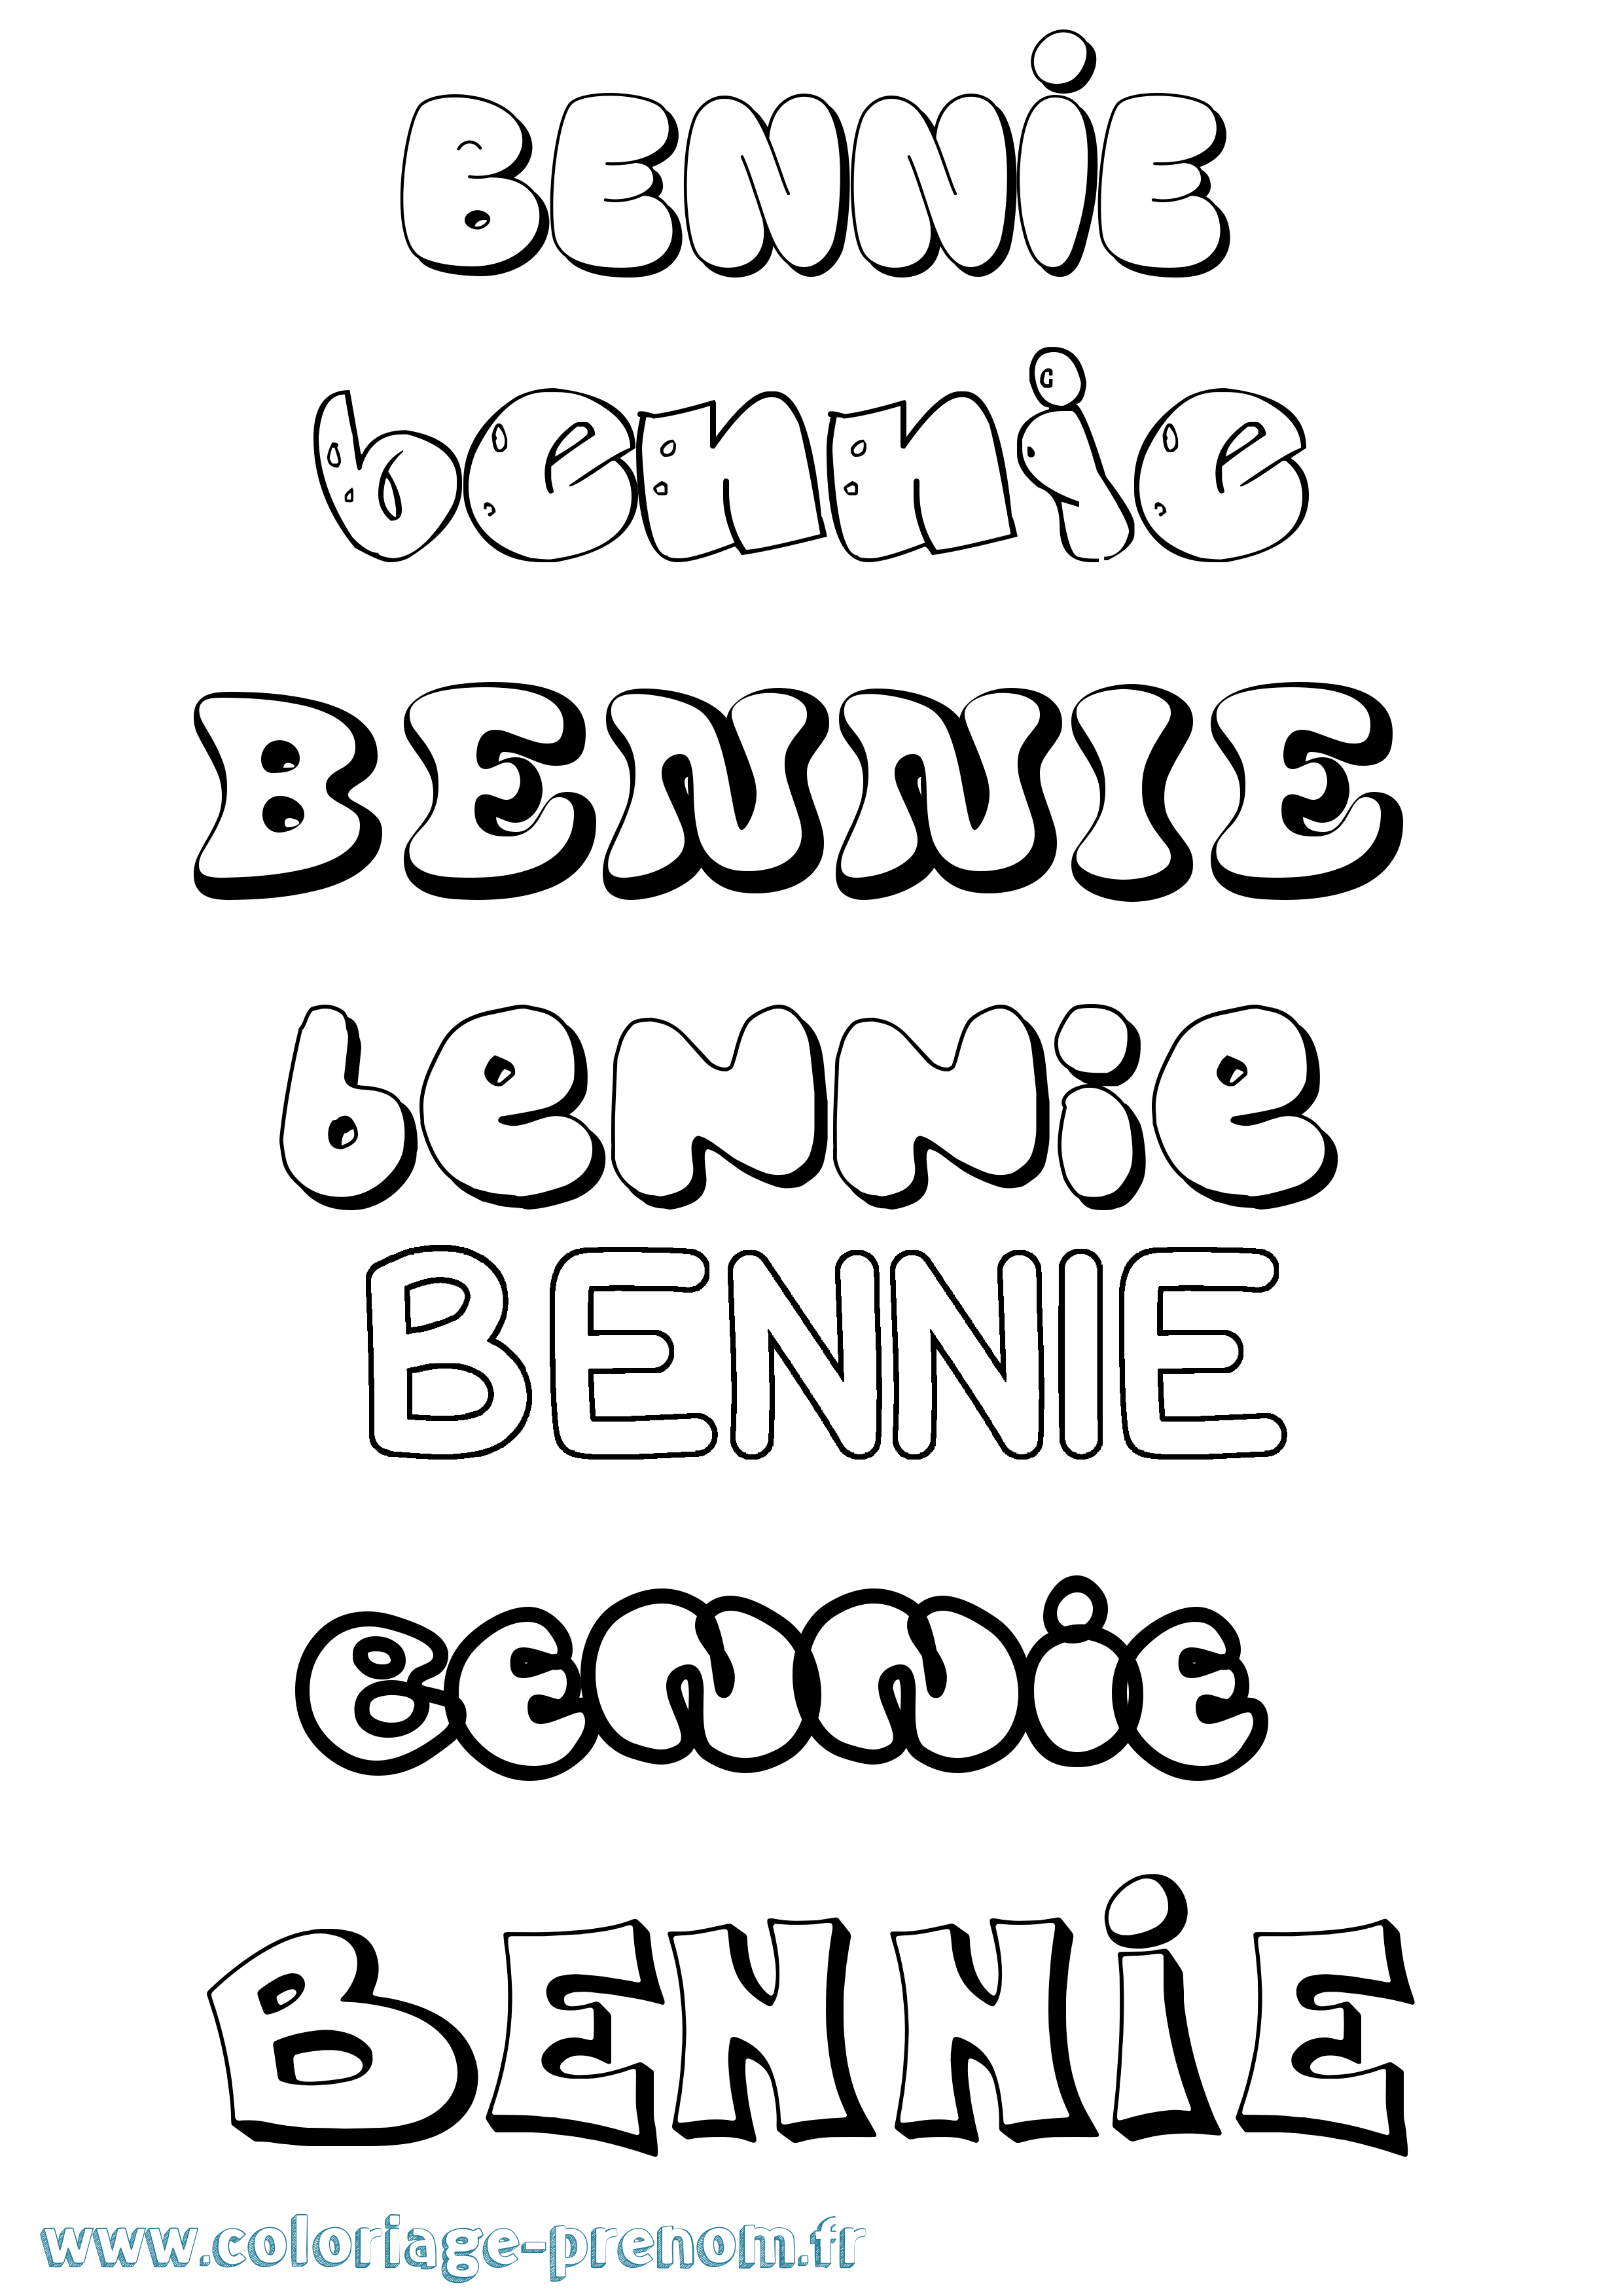 Coloriage prénom Bennie Bubble